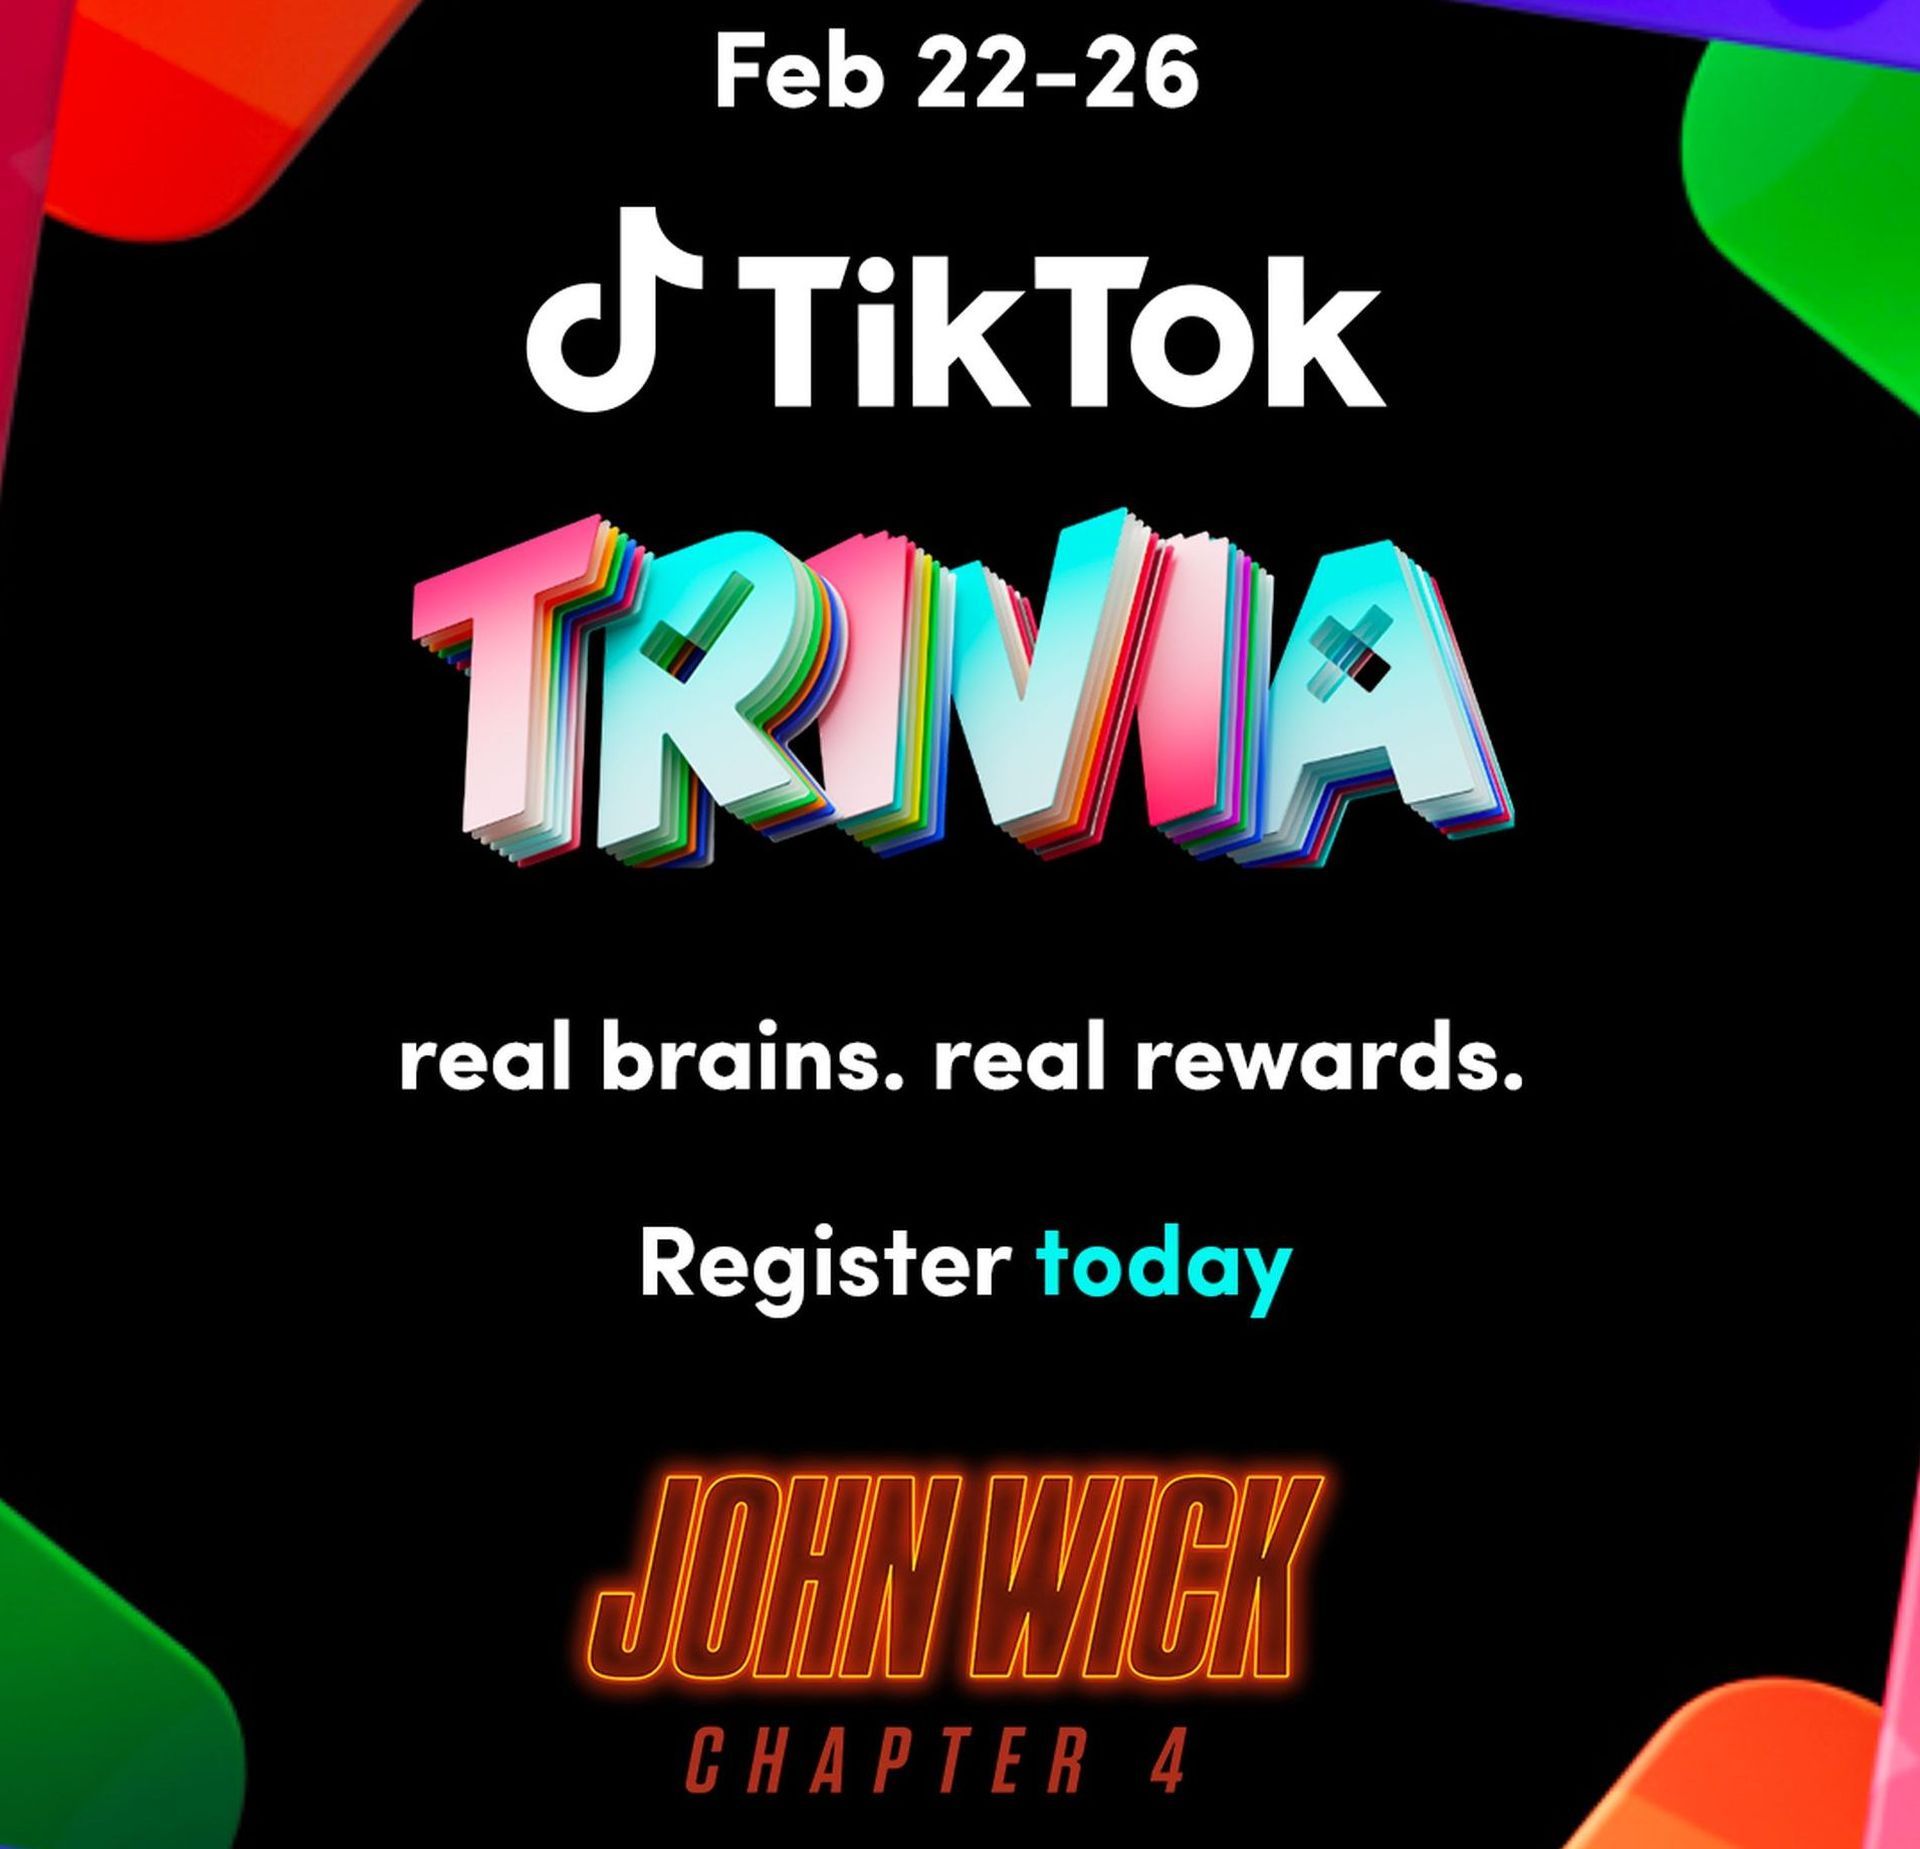 Co to jest TikTok Trivia i jak w nią grać?